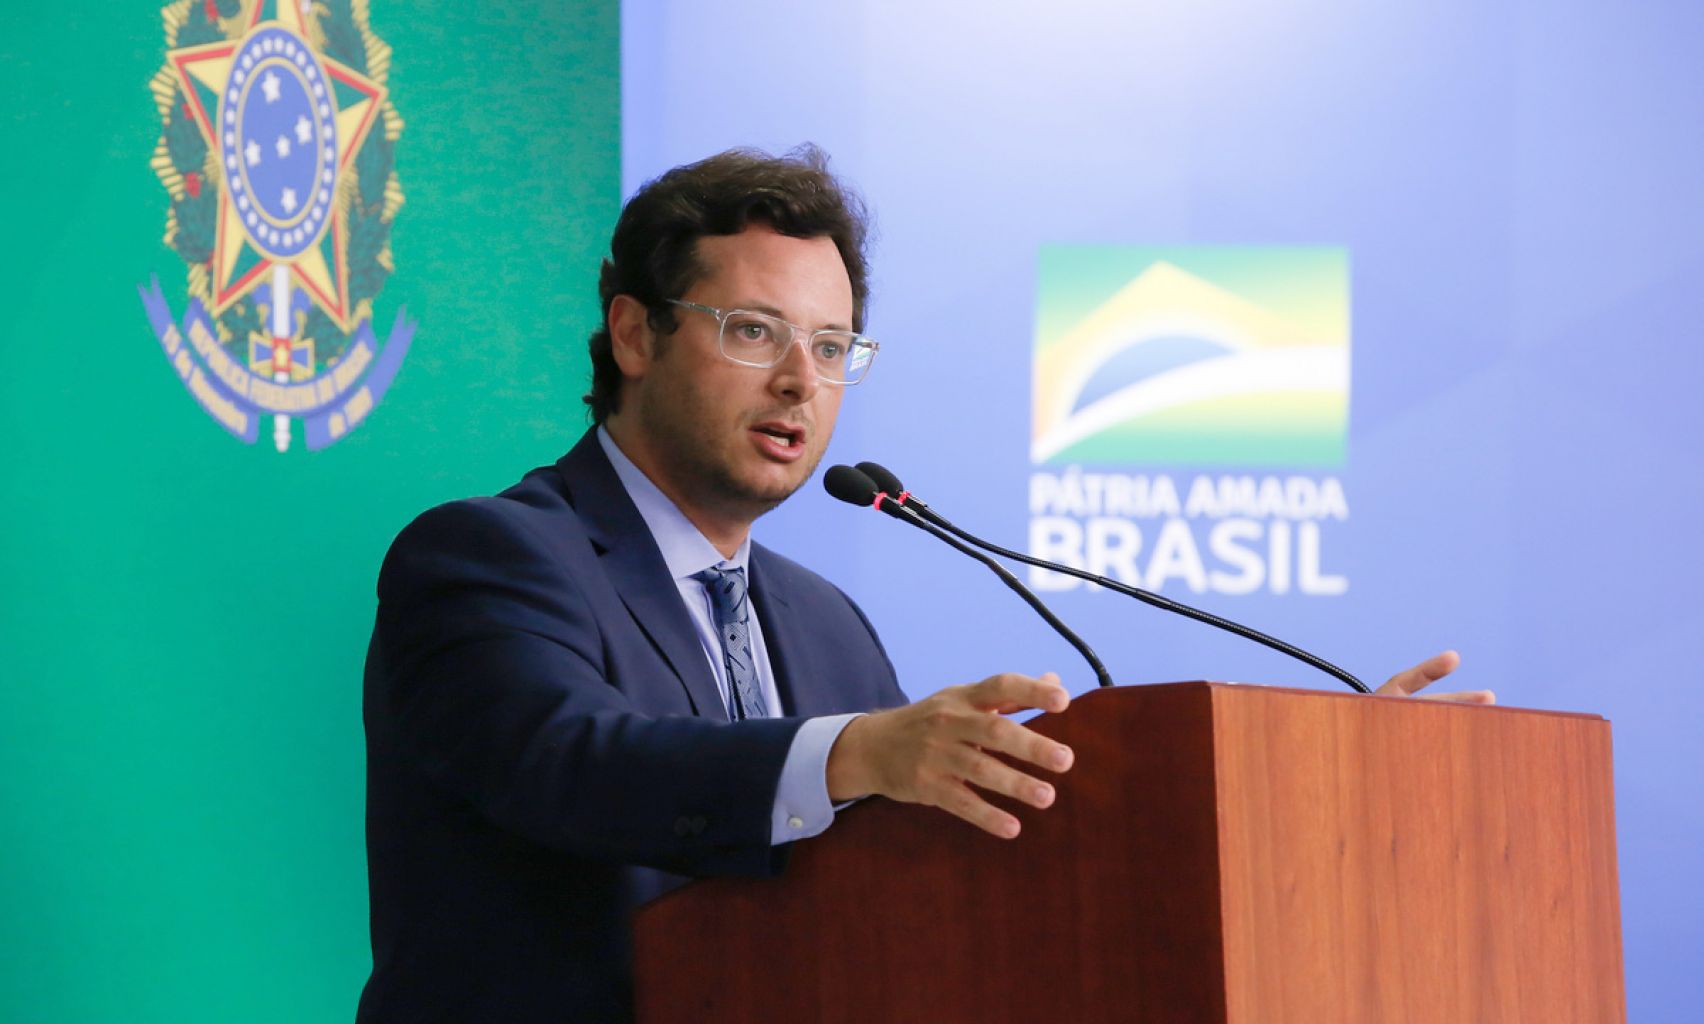 Artigo: Conflito de interesses e arrogância na Secom de Bolsonaro